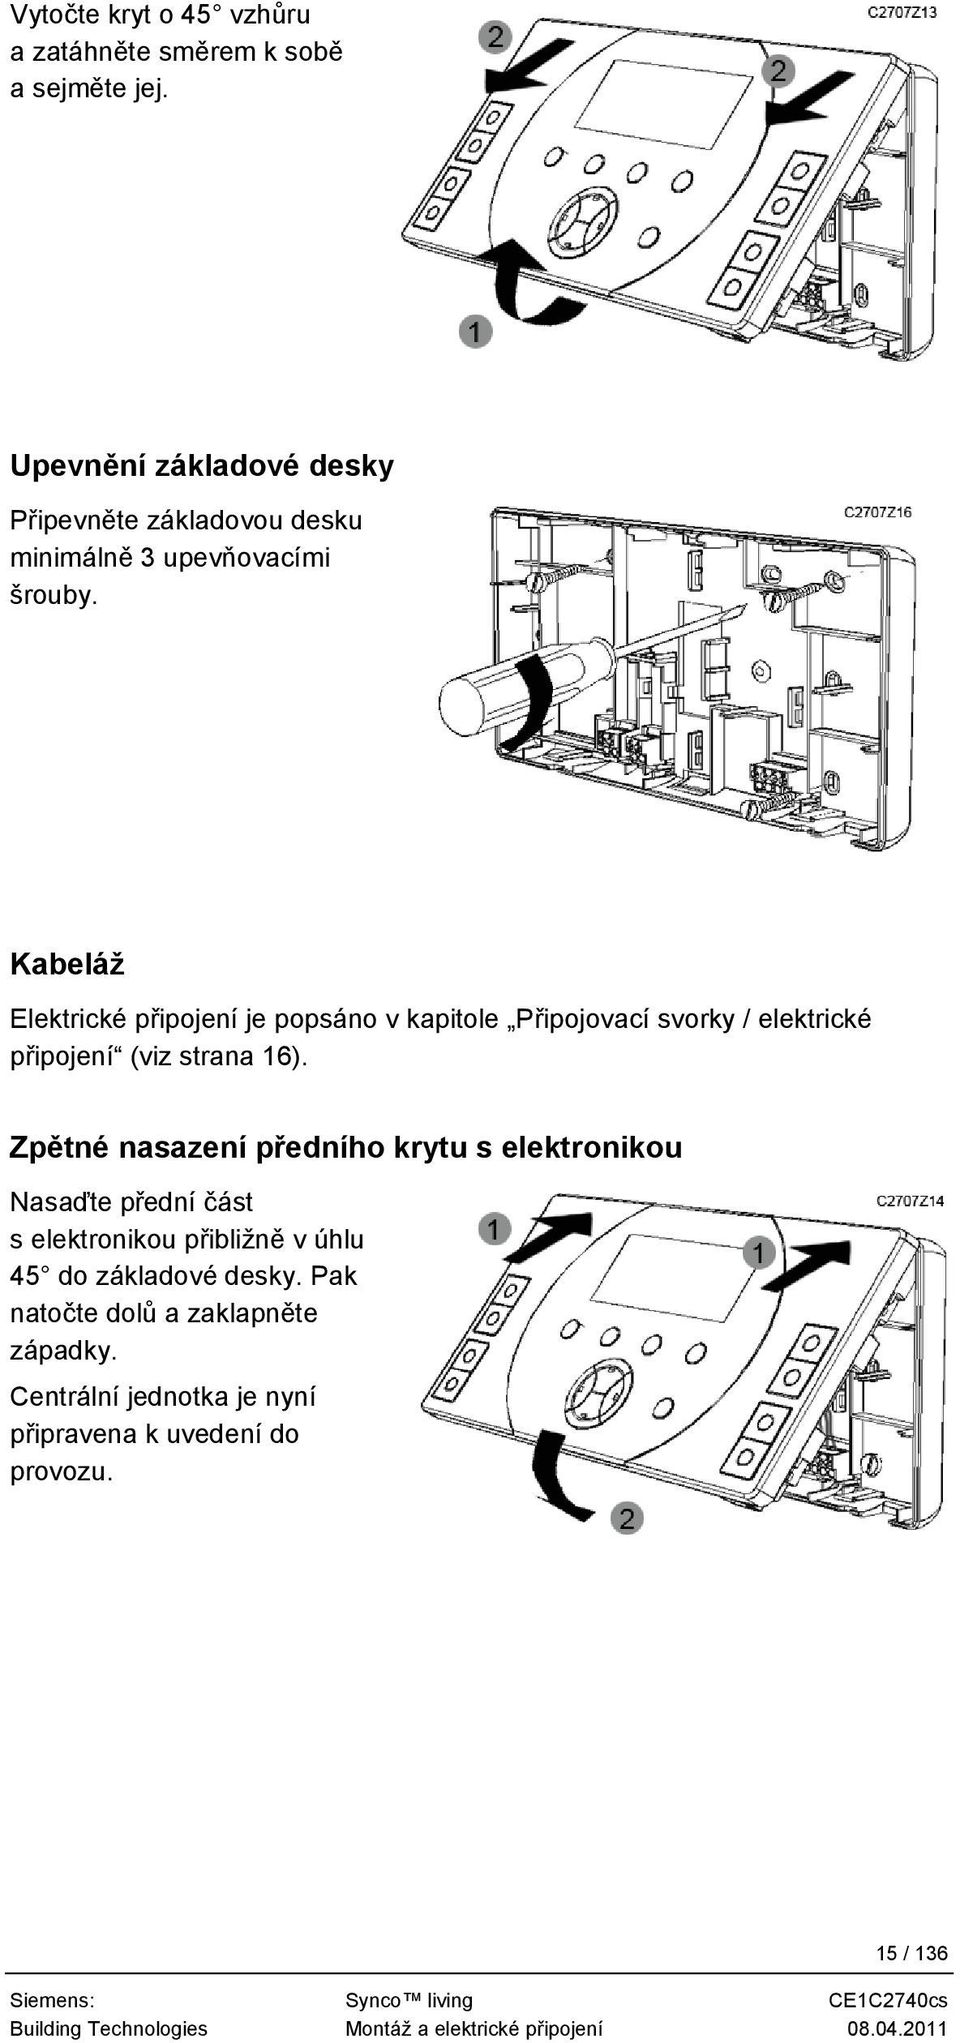 Kabeláž Elektrické připojení je popsáno v kapitole Připojovací svorky / elektrické připojení (viz strana 16).